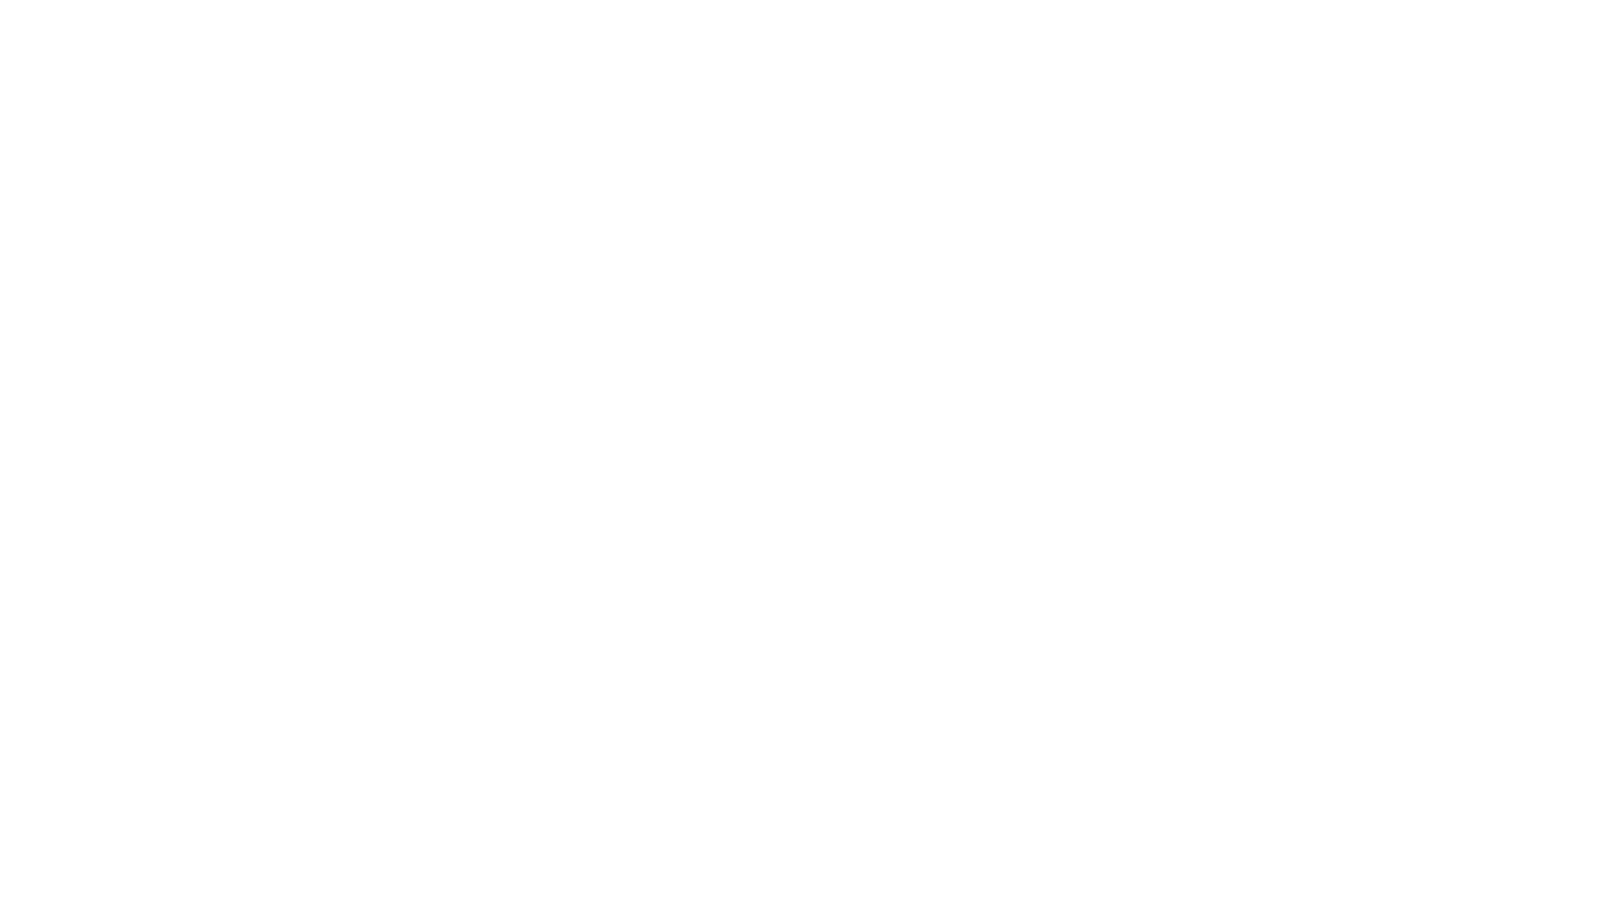 মো: ওয়াকিল আহমেদ, ফেমটো-ল্যাসিক করিয়েছেন ২০২১ সালে। 
আজকে তার অভিজ্ঞতার কথা শুনবো। সাথে আছেন ডা: আশরাফুল হক।
@drashrafulhuq.eyesurgeon 
চোখের সমস্যা ও চিকিৎসার জন্য যোগাযোগ করুন - ডা: আশরাফুল হক, 
বাংলাদেশ আই হসপিটাল - ধানমন্ডী - জিগাতলা - বনানী (১০৬২০, ০১৭০৭০৮১৪৯৯) 
👀 চোখ নিয়ে জানতে সংযুক্ত থাকুন চক্ষু বিশেষজ্ঞ সার্জন ডা: আশরাফুল হক -এর সাথে। 
👉🏼 ফেসবুক: https://www.facebook.com/drashrafulhuq.eyesurgeon.bangladesh
👉🏼 ইউটিউব: https://youtube.com/@drashrafulhuq.eyesurgeon
👉🏼 ইনষ্টাগ্রাম: https://instagram.com/drashrafulhuq.eyesurgeon_ig
👉🏼 ওয়েবসাইট: https://www.drashrafulhuq.com 
#drashrafulhuq #চোখেরডাক্তার #eyesurgeon #Lasik #lasiksurgeon #LasikSurgery